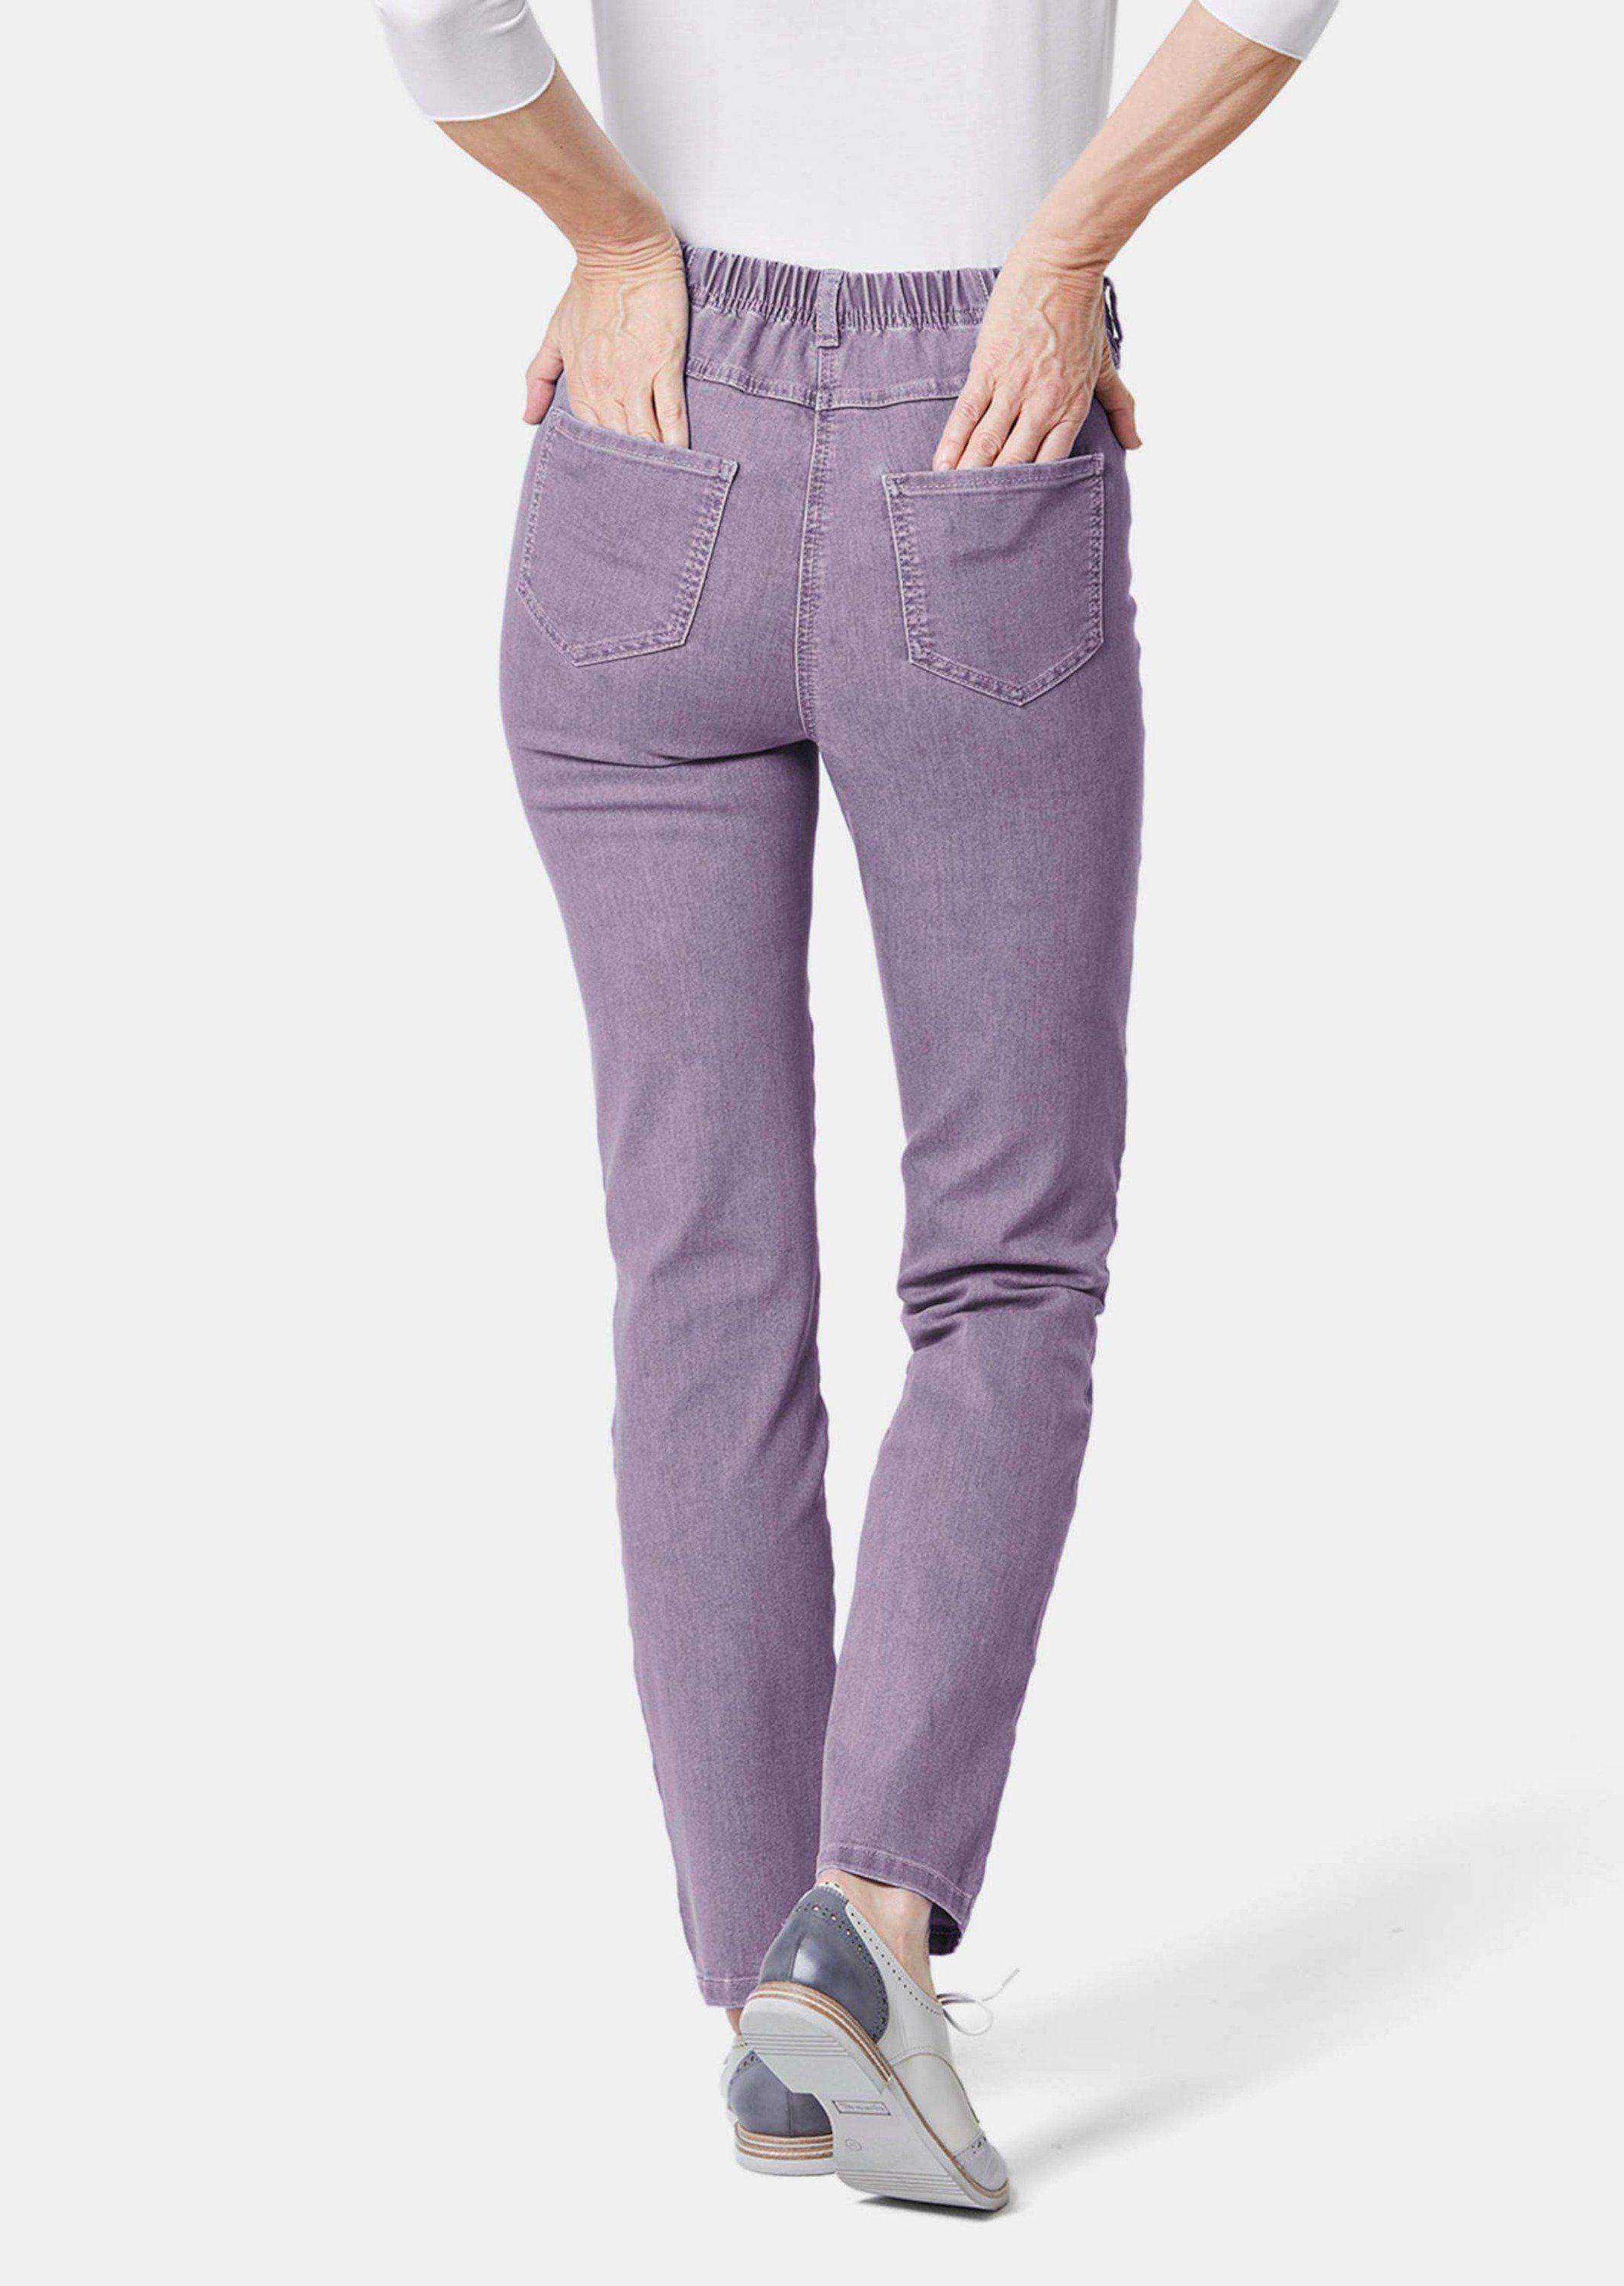 Kurzgröße: Bequeme Bequeme Jeans GOLDNER High-Stretch-Jeanshose lavendel